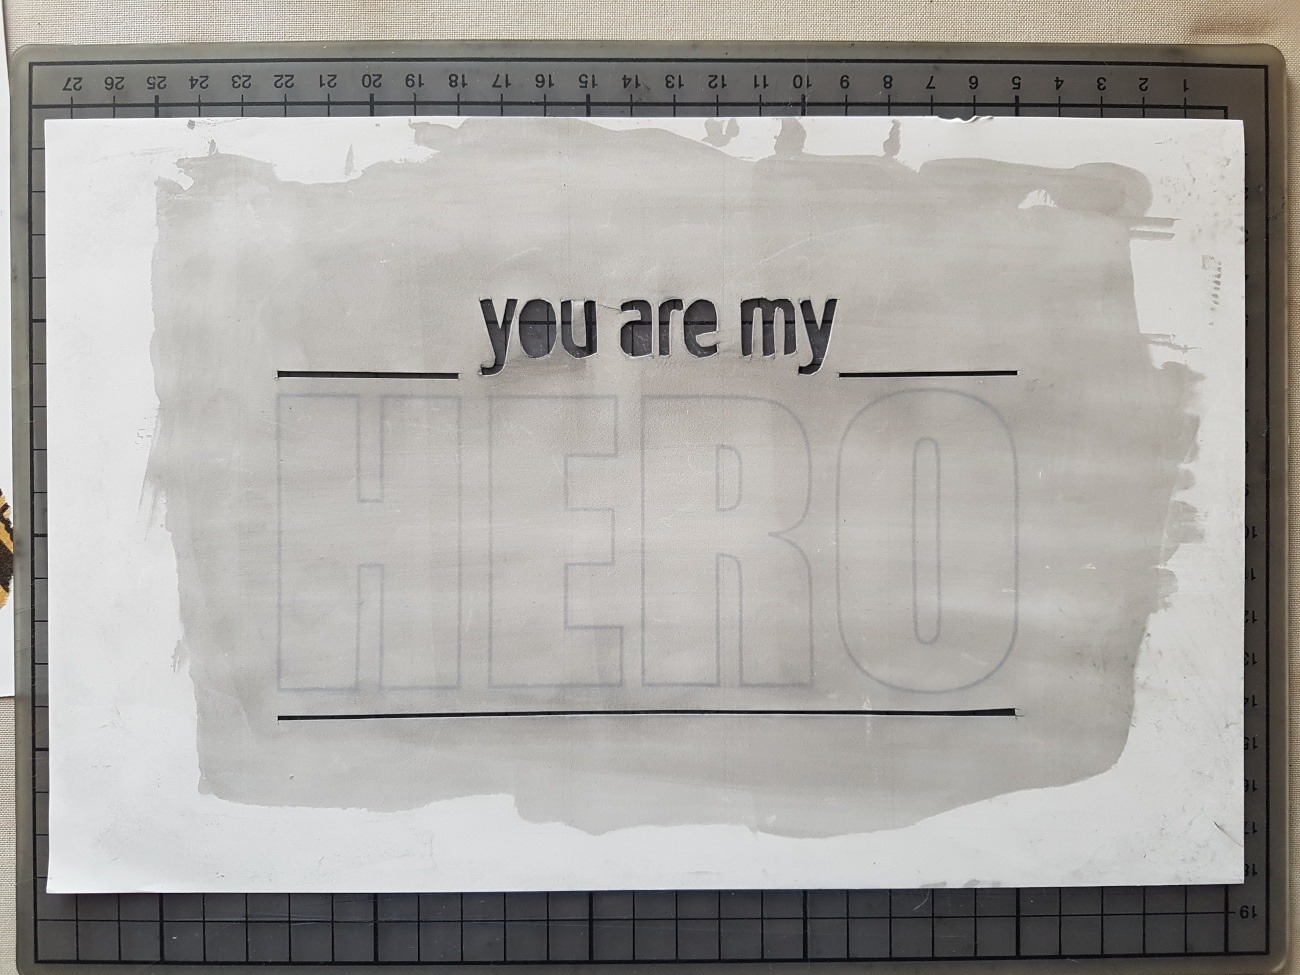 Die benutze Schablone. Man sieht den Schriftzug "you are my" und zwei horizontale Linien.